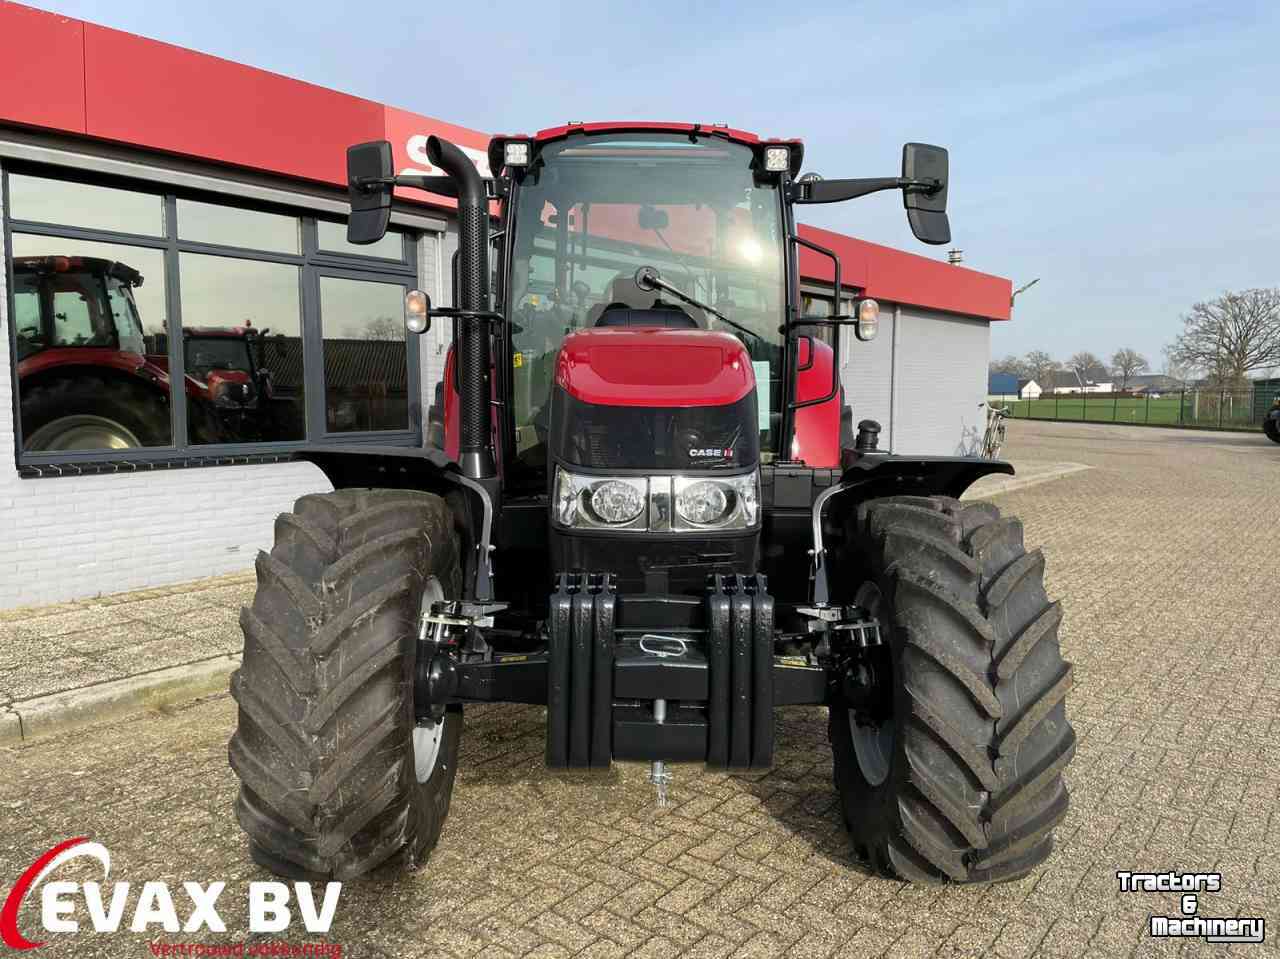 Schlepper / Traktoren Case-IH Luxxum 110